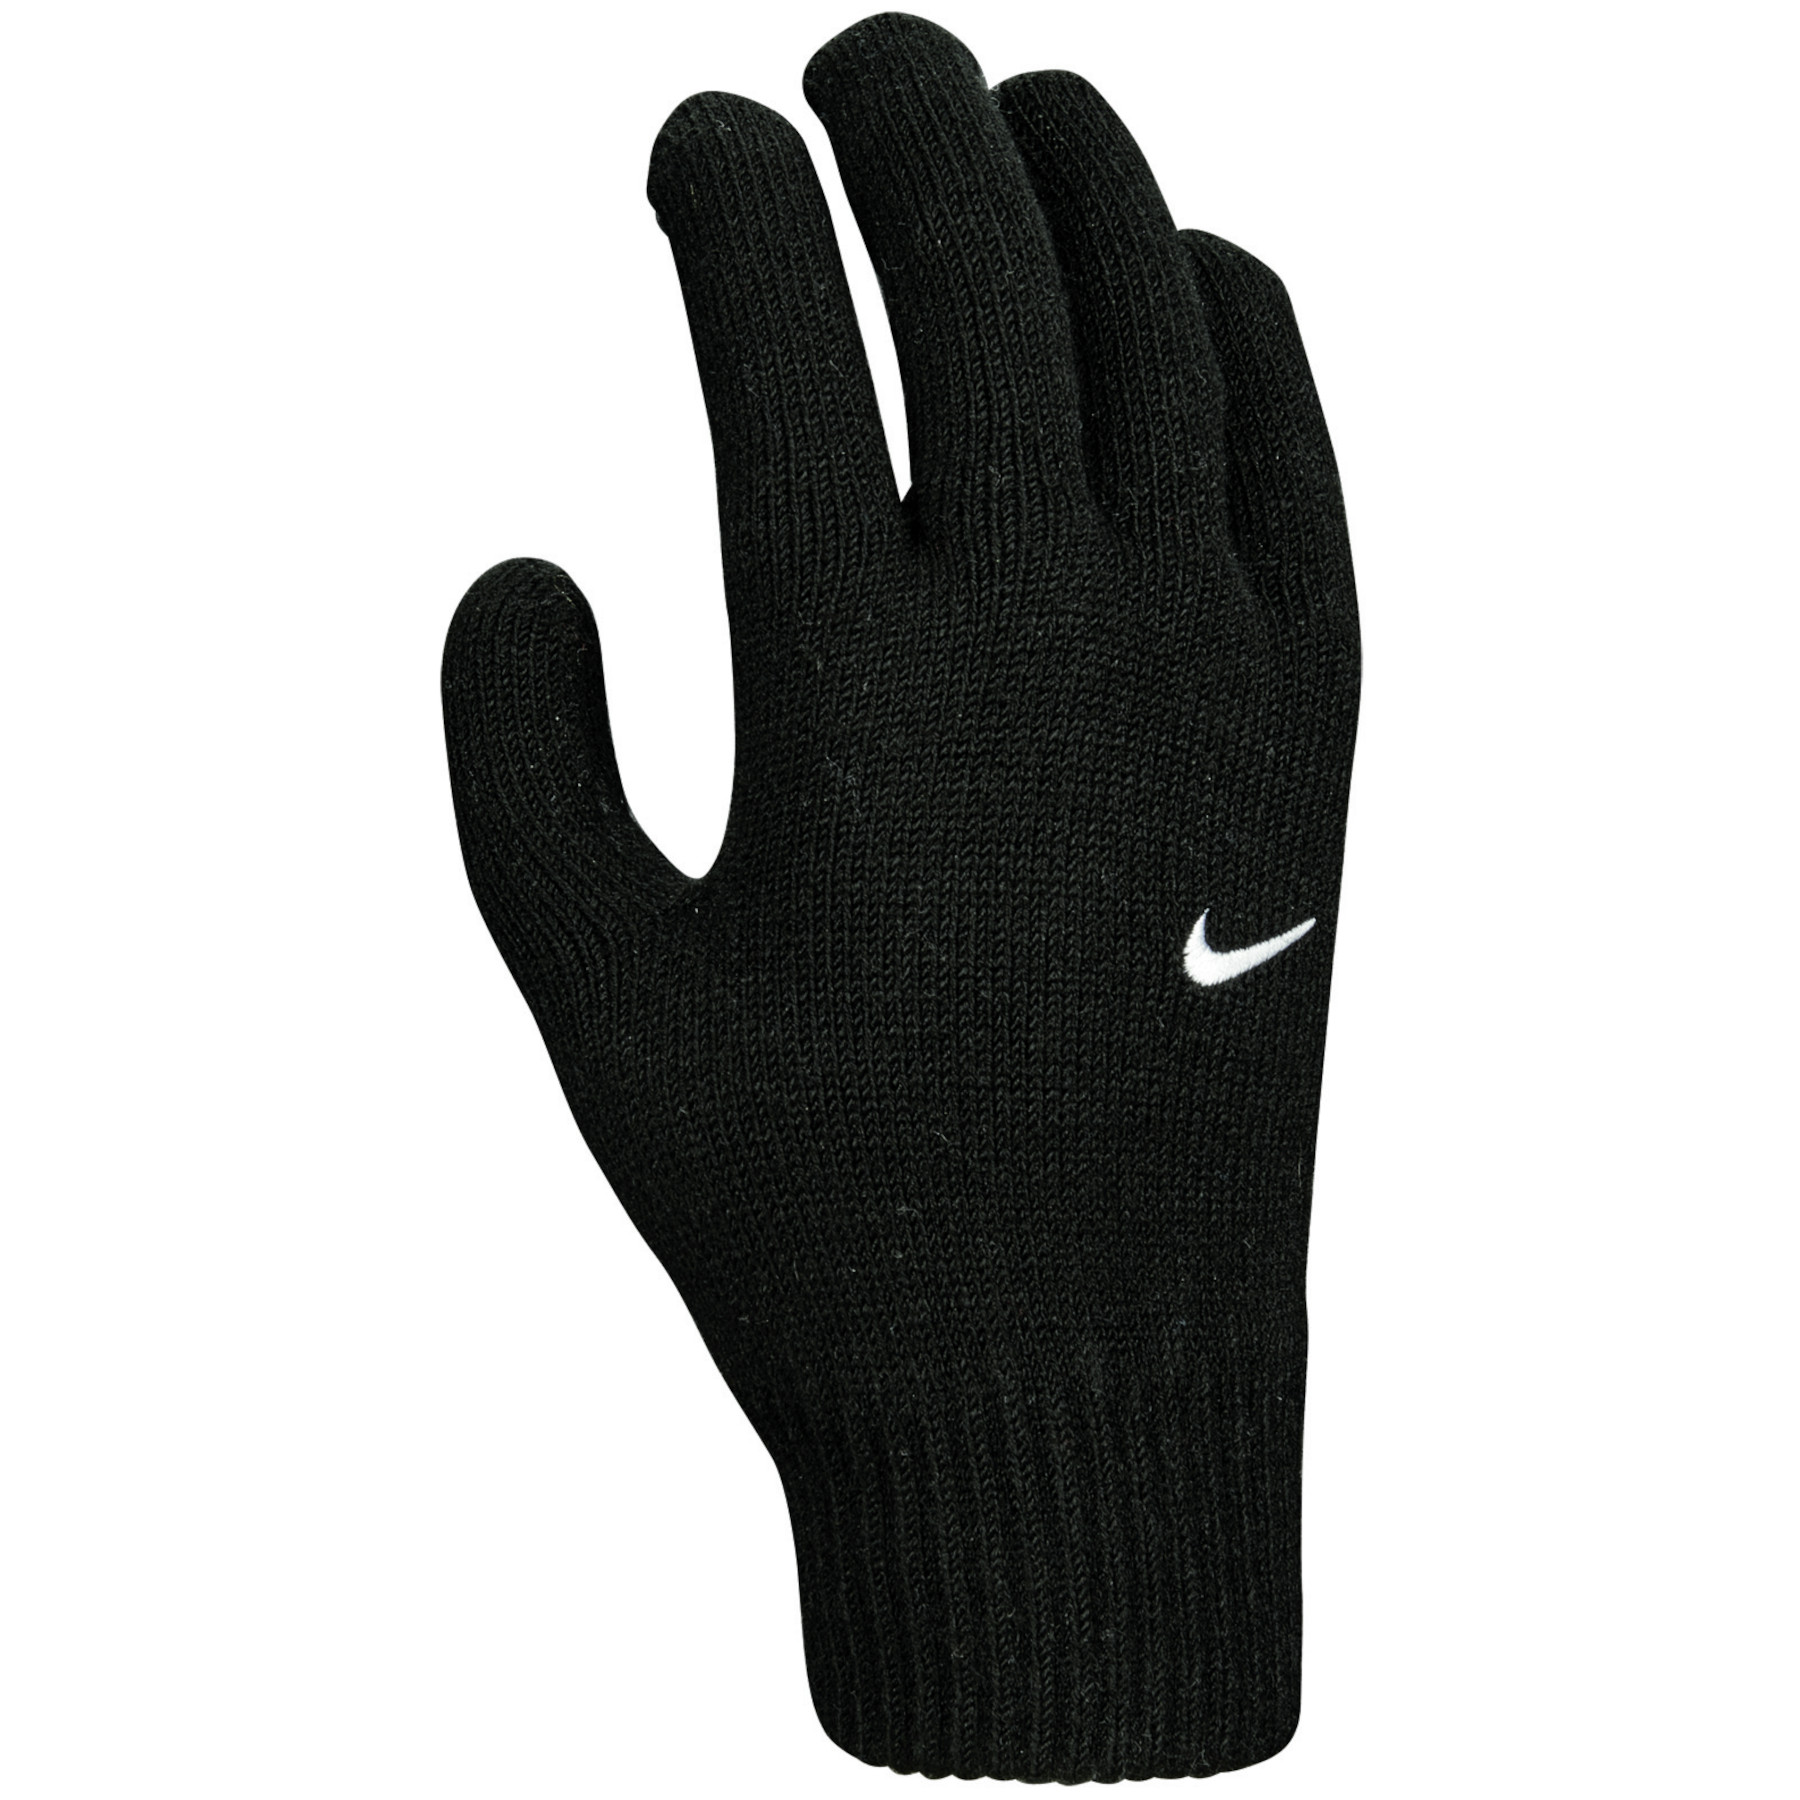 Productfoto van Nike Swoosh Knit Jongere Hardloop-Handschoenen 2.0 - black/white 010